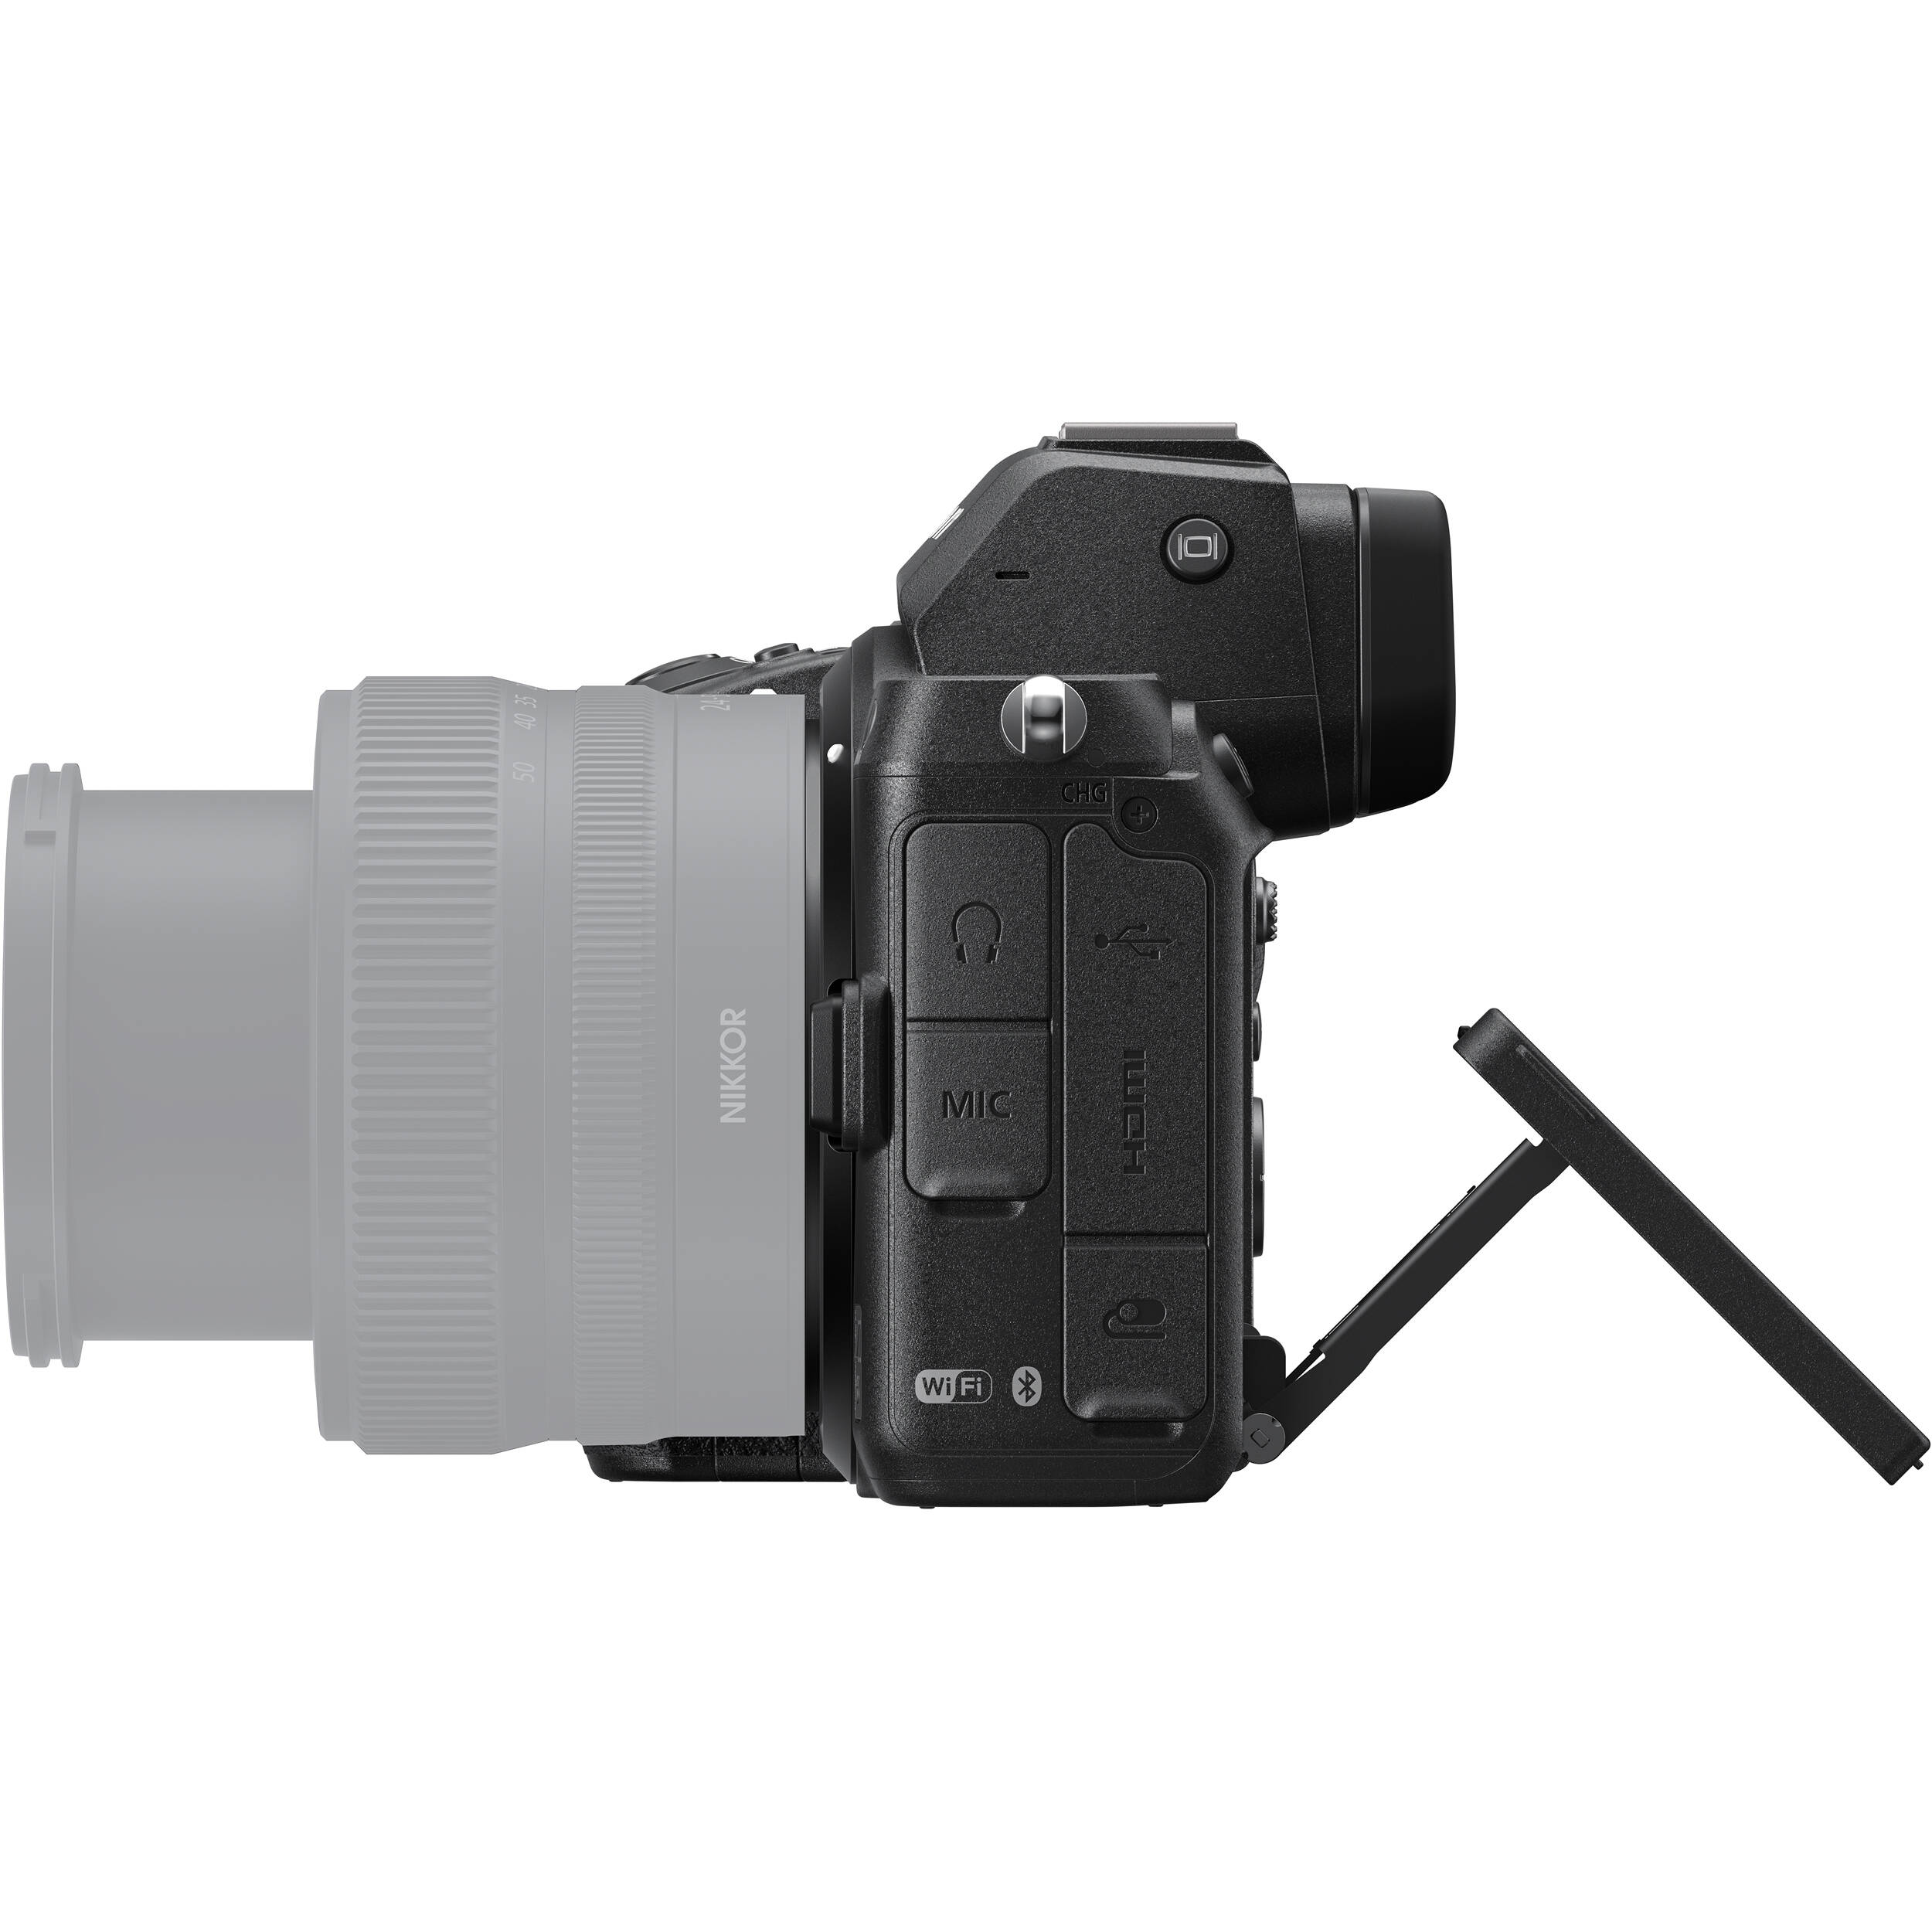 Bạn đang tìm kiếm một chiếc máy ảnh đẹp và chất lượng tốt? VJShop sẽ đưa tới bạn chiếc Máy ảnh Nikon Z5 với giá tốt và bảo hành 12 tháng. Với máy ảnh này, bạn sẽ có thể chụp những bức ảnh đẹp nhất mà không cần phải lo lắng về chất lượng của chúng. Hãy tham khảo ngay tại VJShop để biết thêm chi tiết về sản phẩm này.